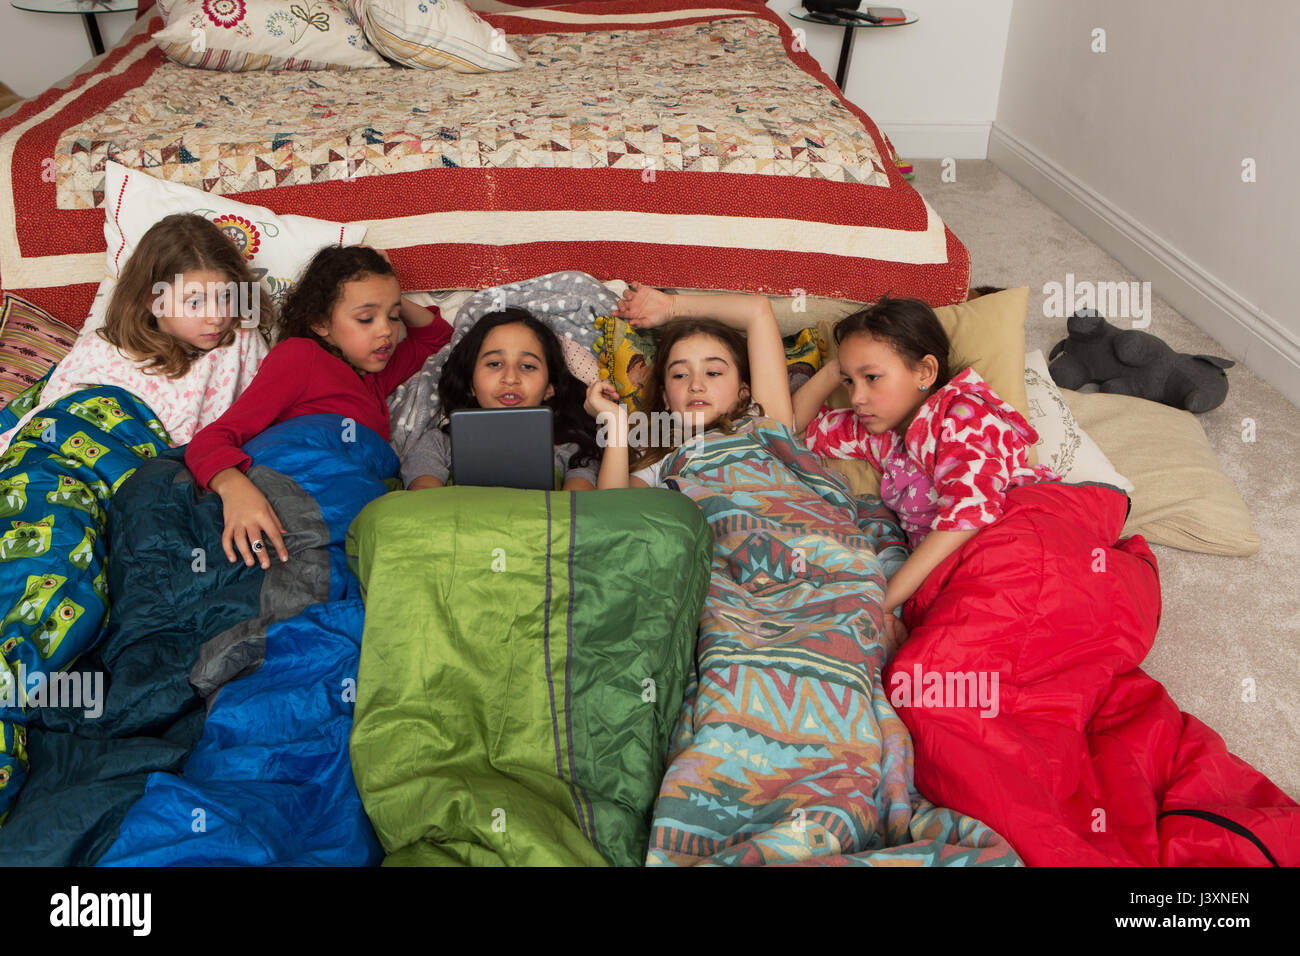 Ragazze in sacchi a pelo a slumber party tramite tavoletta digitale Foto Stock